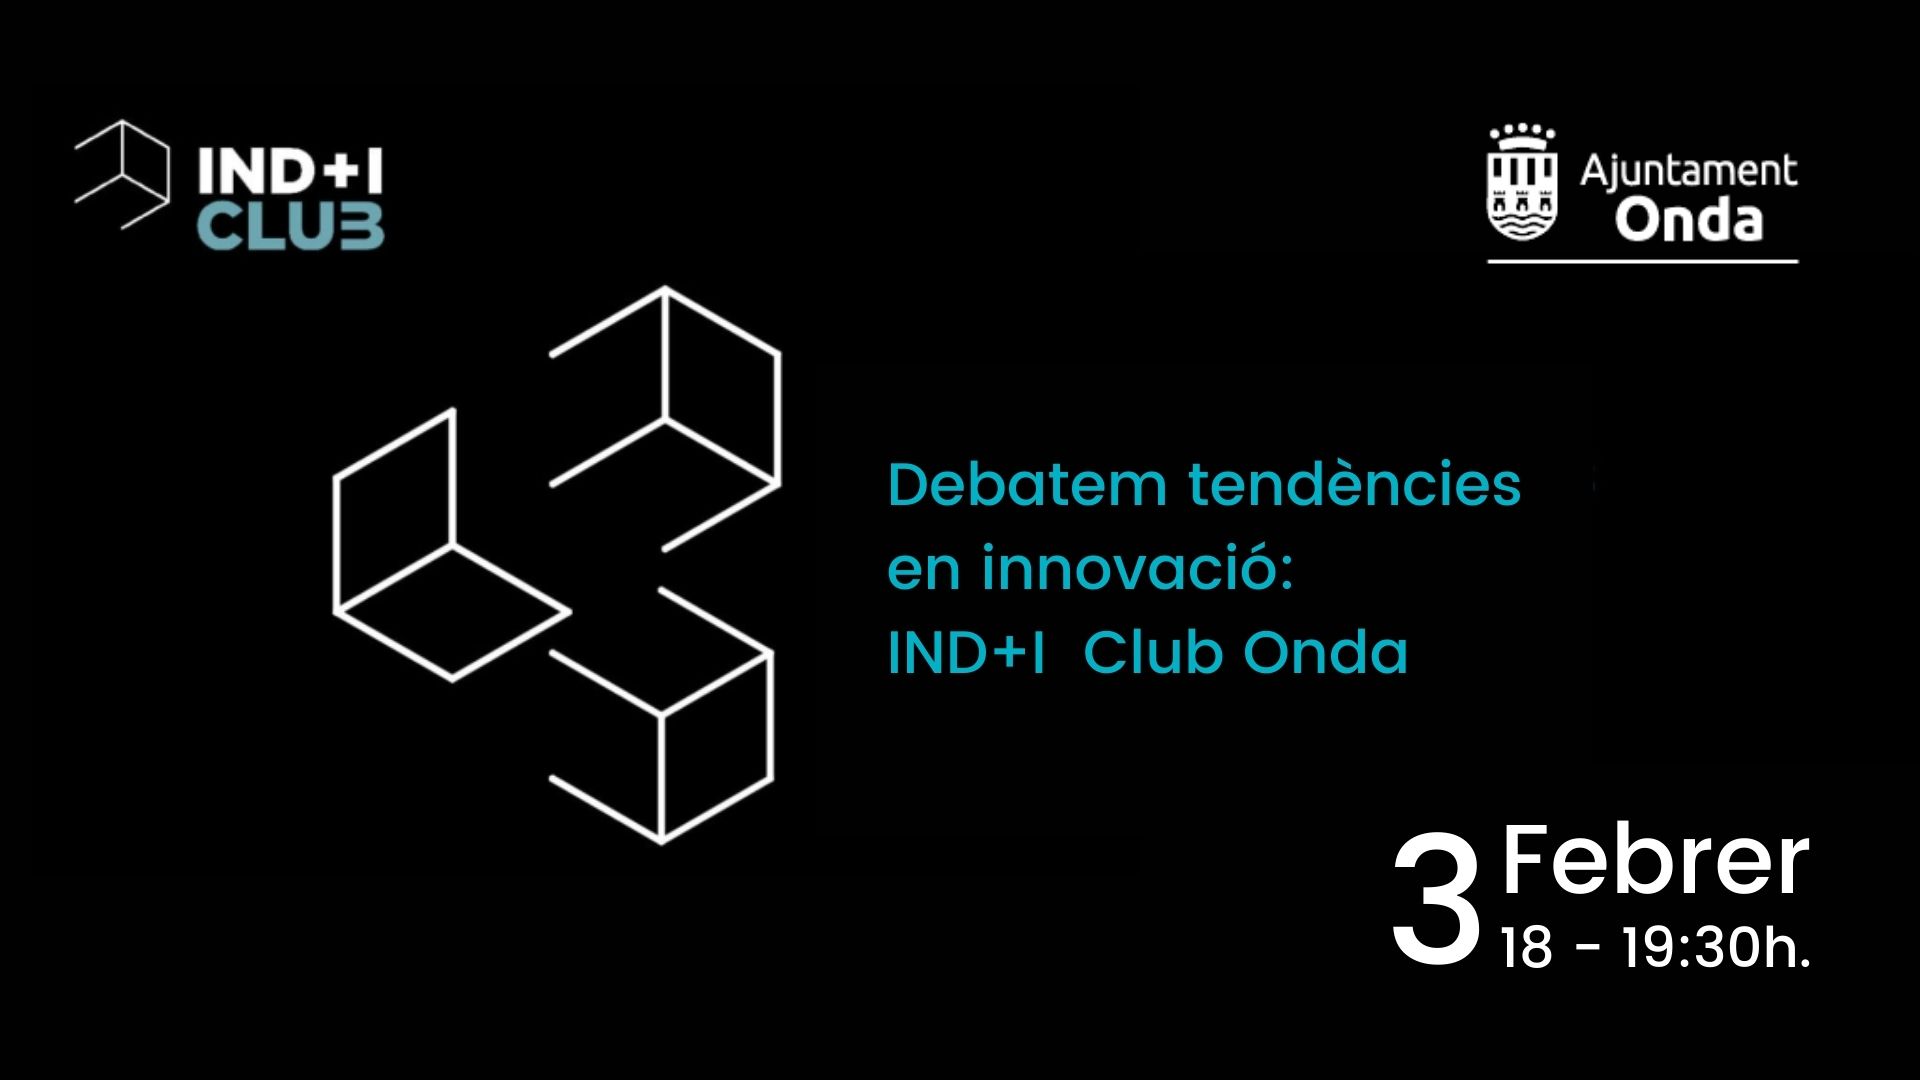 IND+I Club Onda